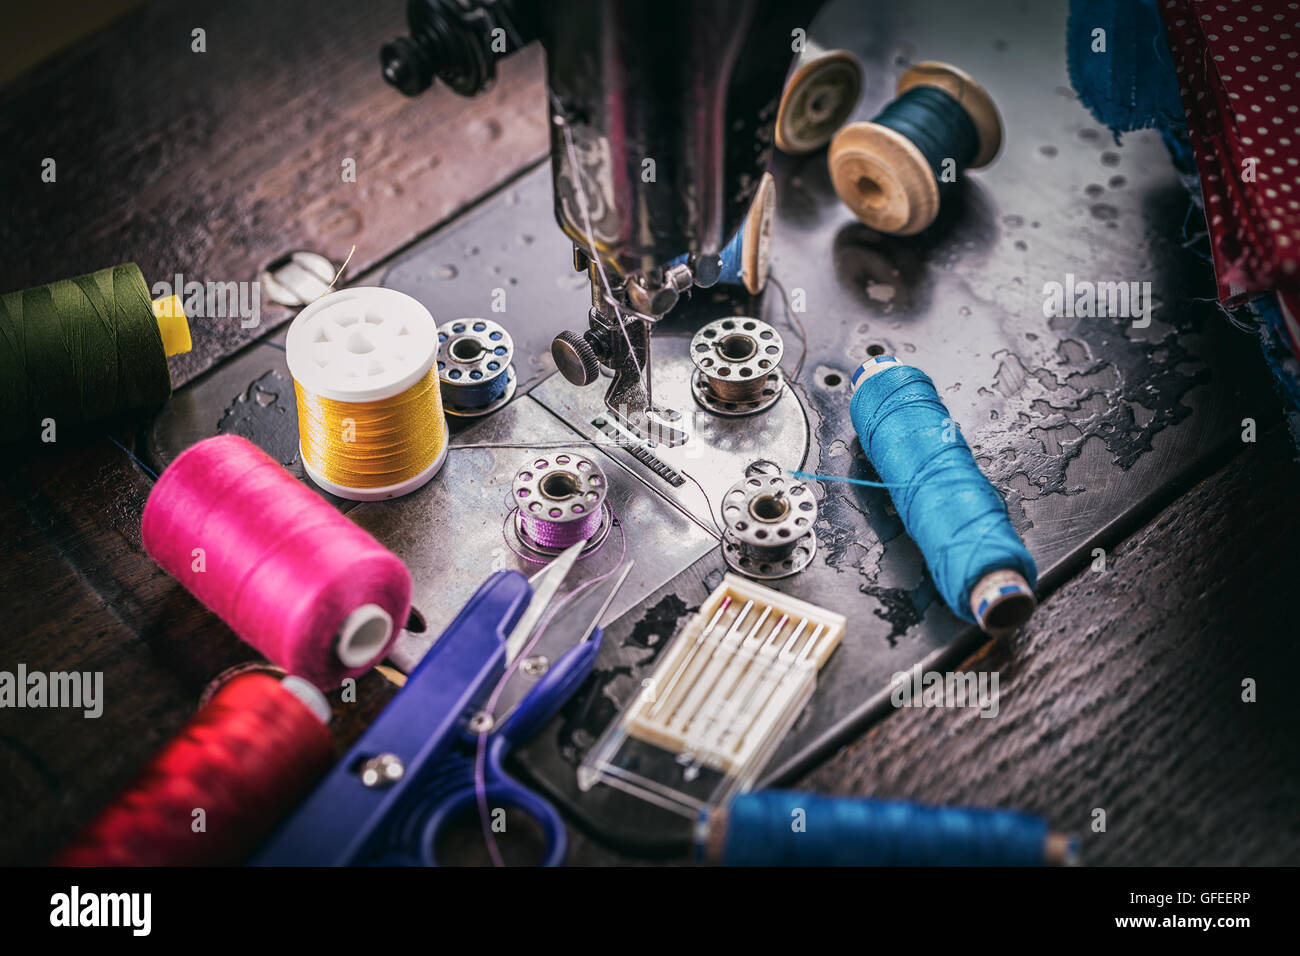 Máquina de coser con utensilios para coser la costura Foto de stock